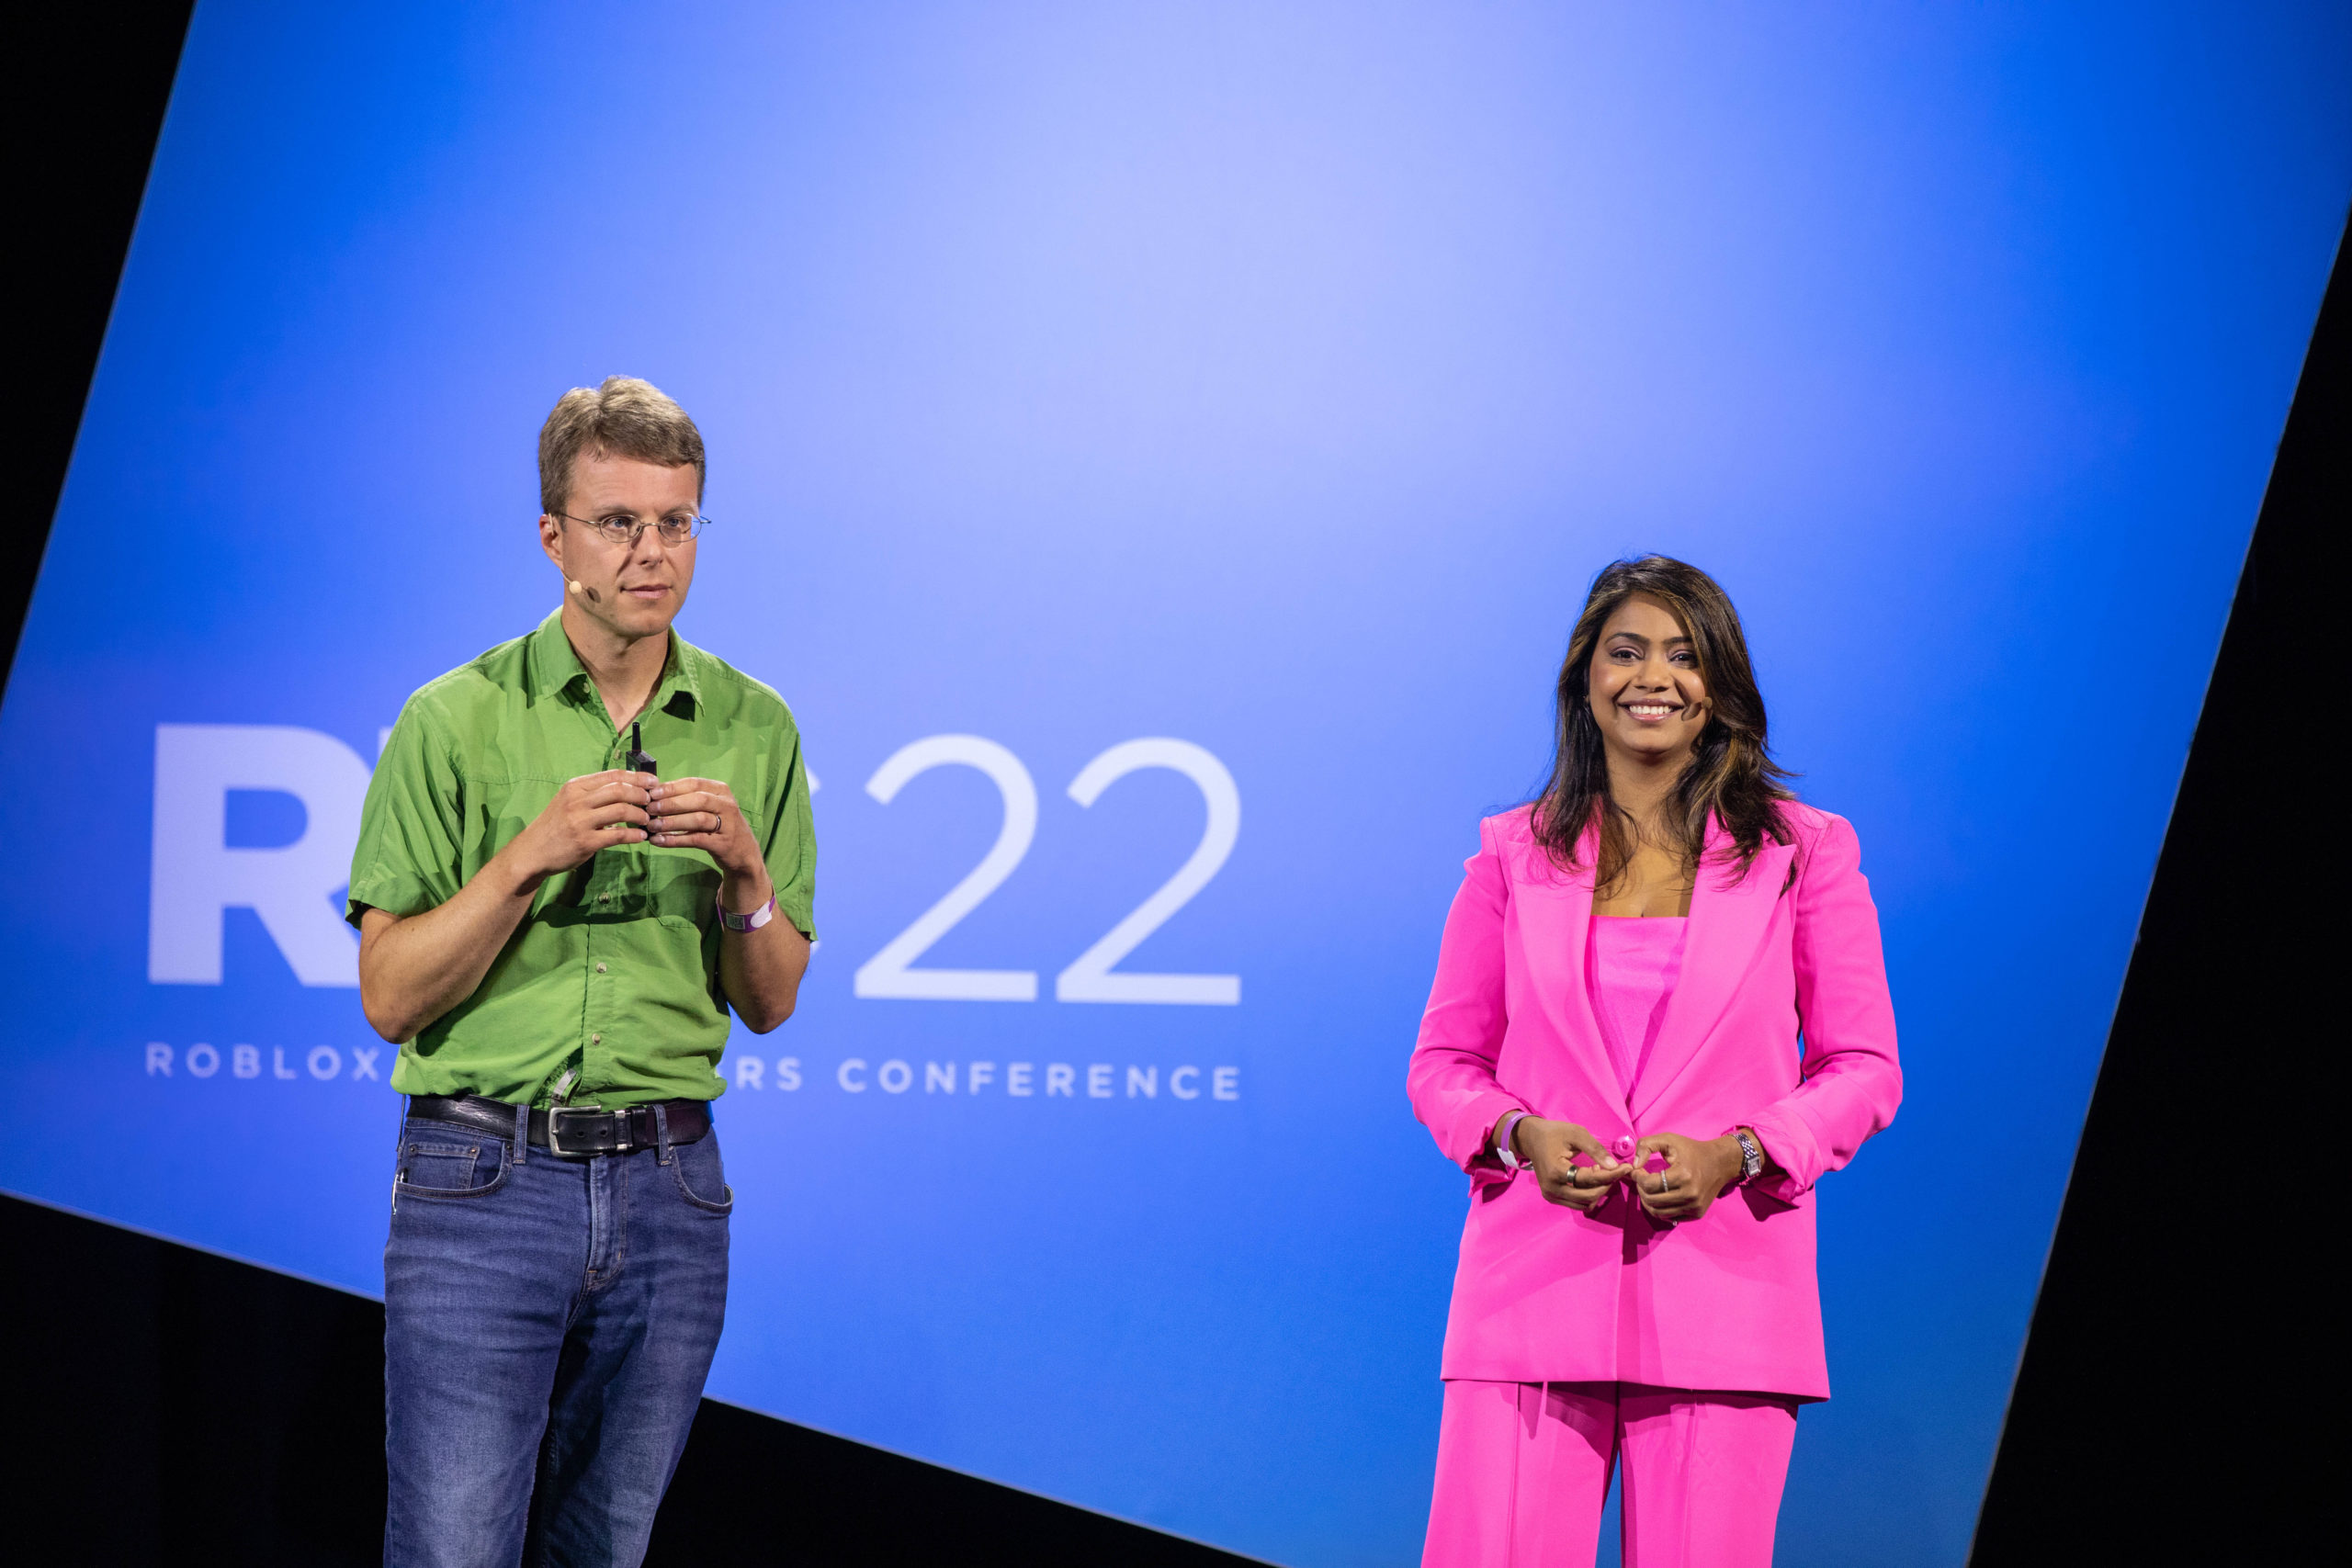 Garima Sinha en haar collega Tom Sanocki op het podium van de Roblox Developers Conference